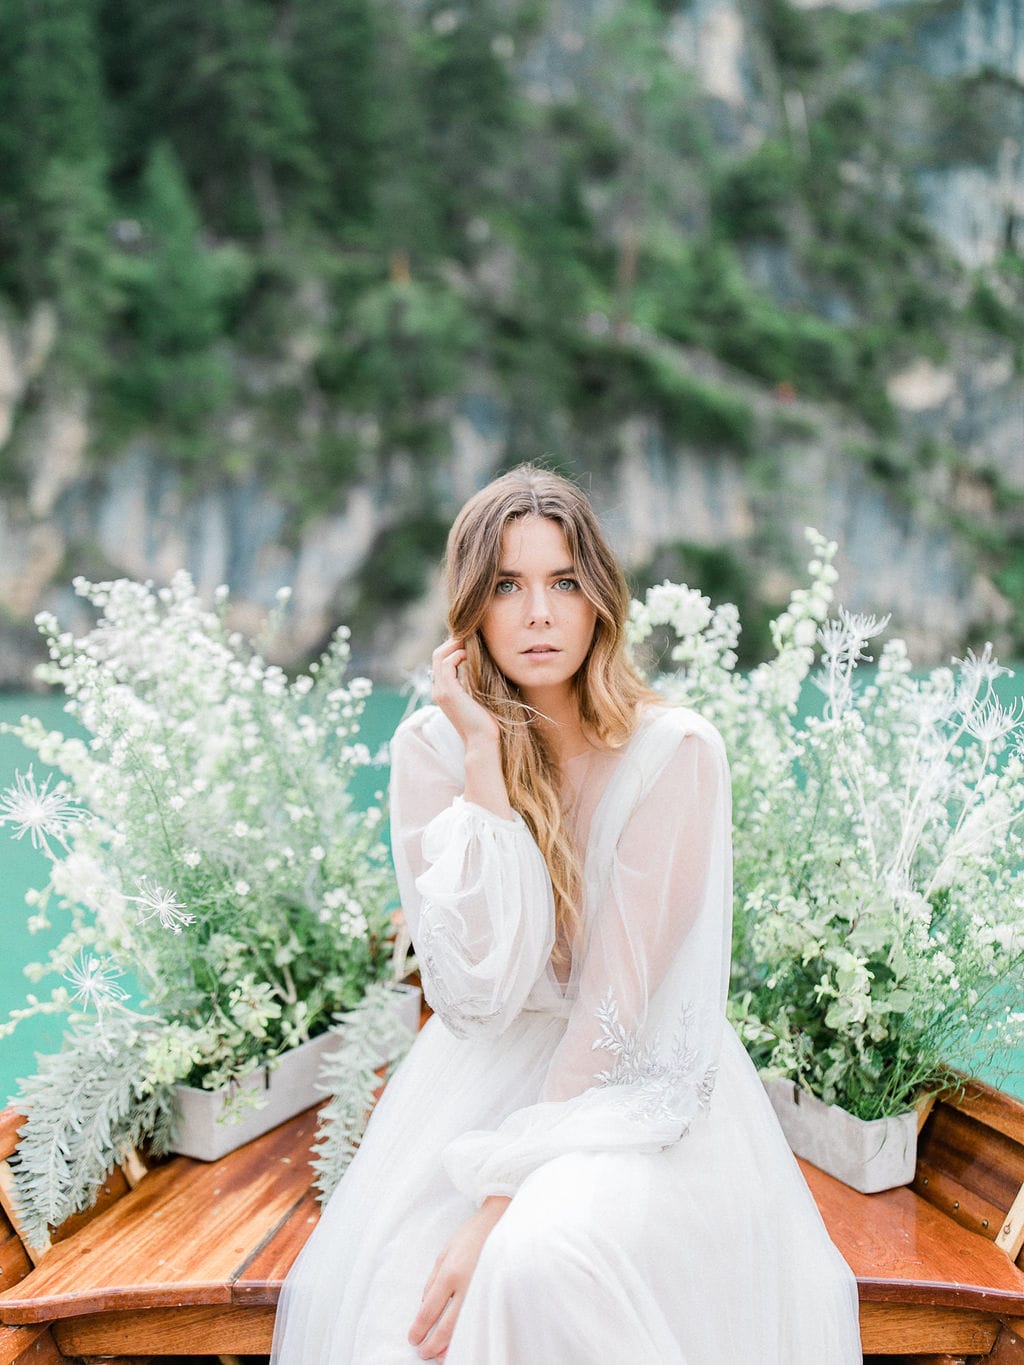 Un elopement au Lac de Braies en Italie - Capucine Atelier Floral - Fleuriste mariage Fine art